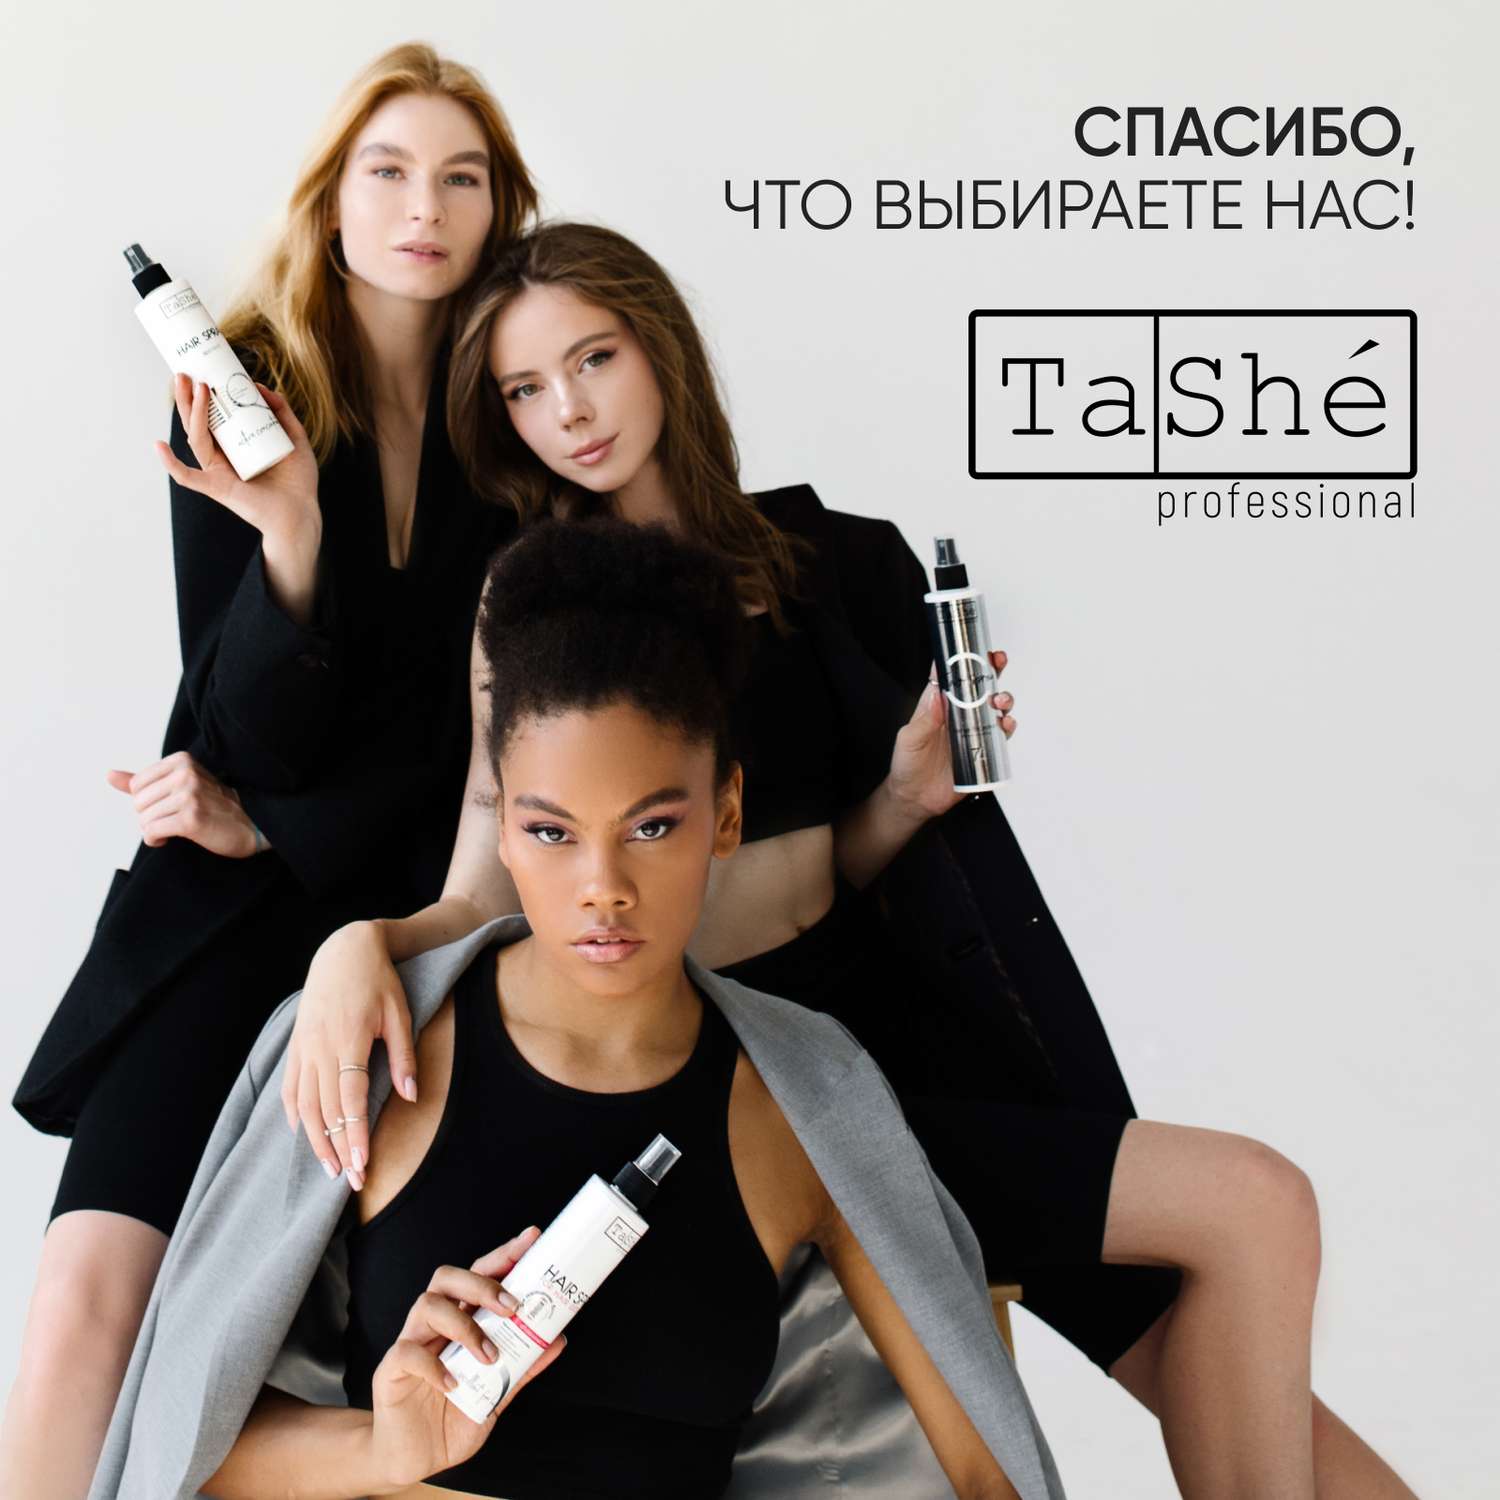 Масло для сухих волос Tashe Professional ультраблеск и термозащита 30 мл - фото 7